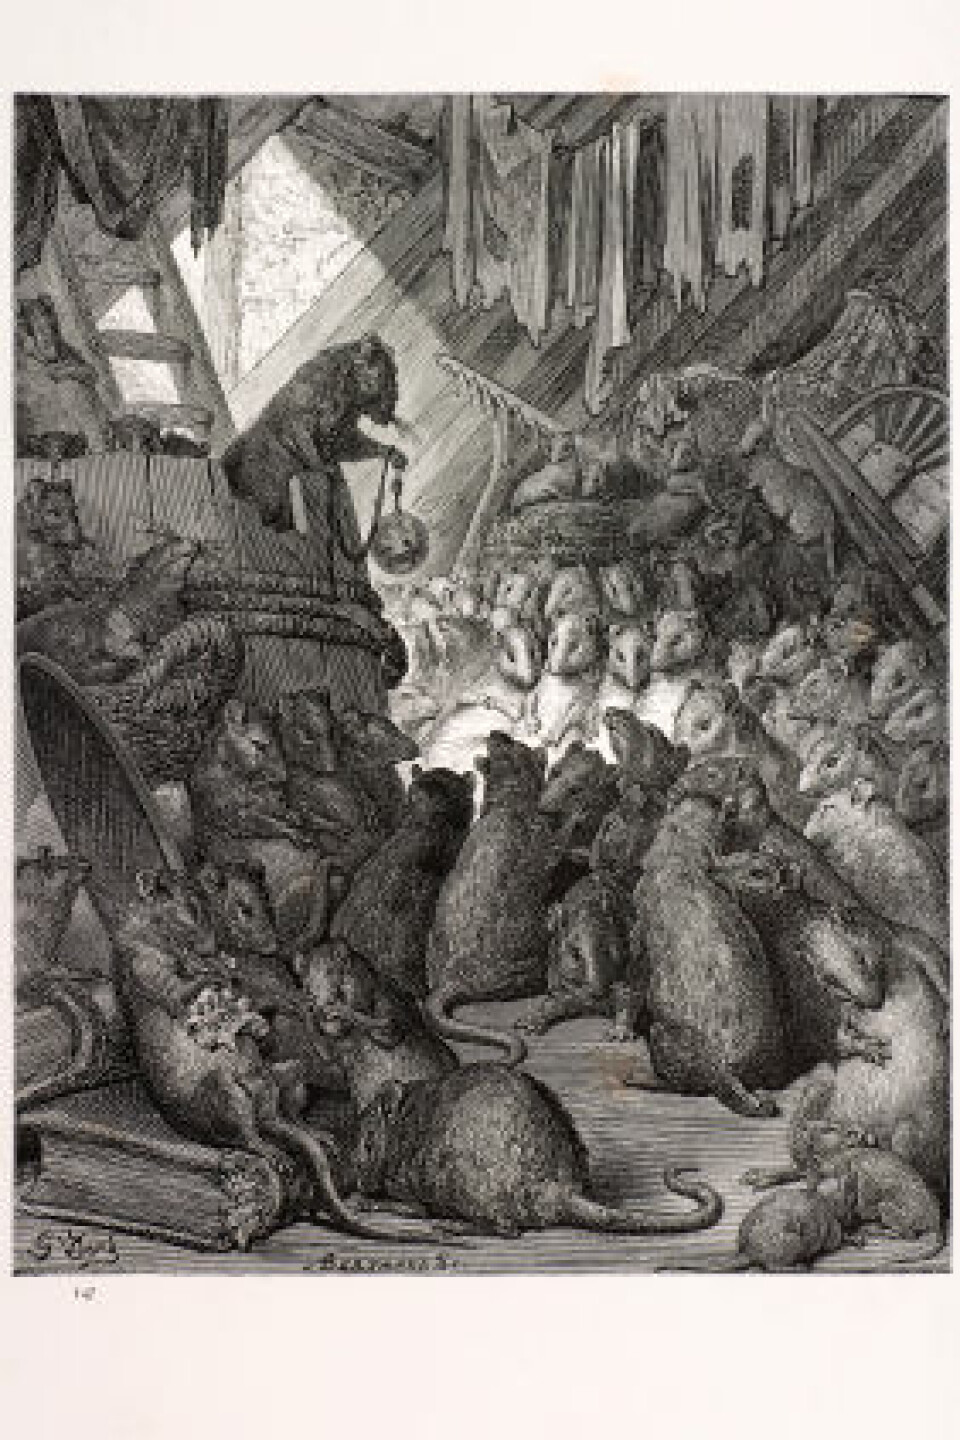 Her holder rottene råd, slik Paul Gustave Doré (1832-1883) forestilte seg det i 1870. (Foto: iStockphoto)